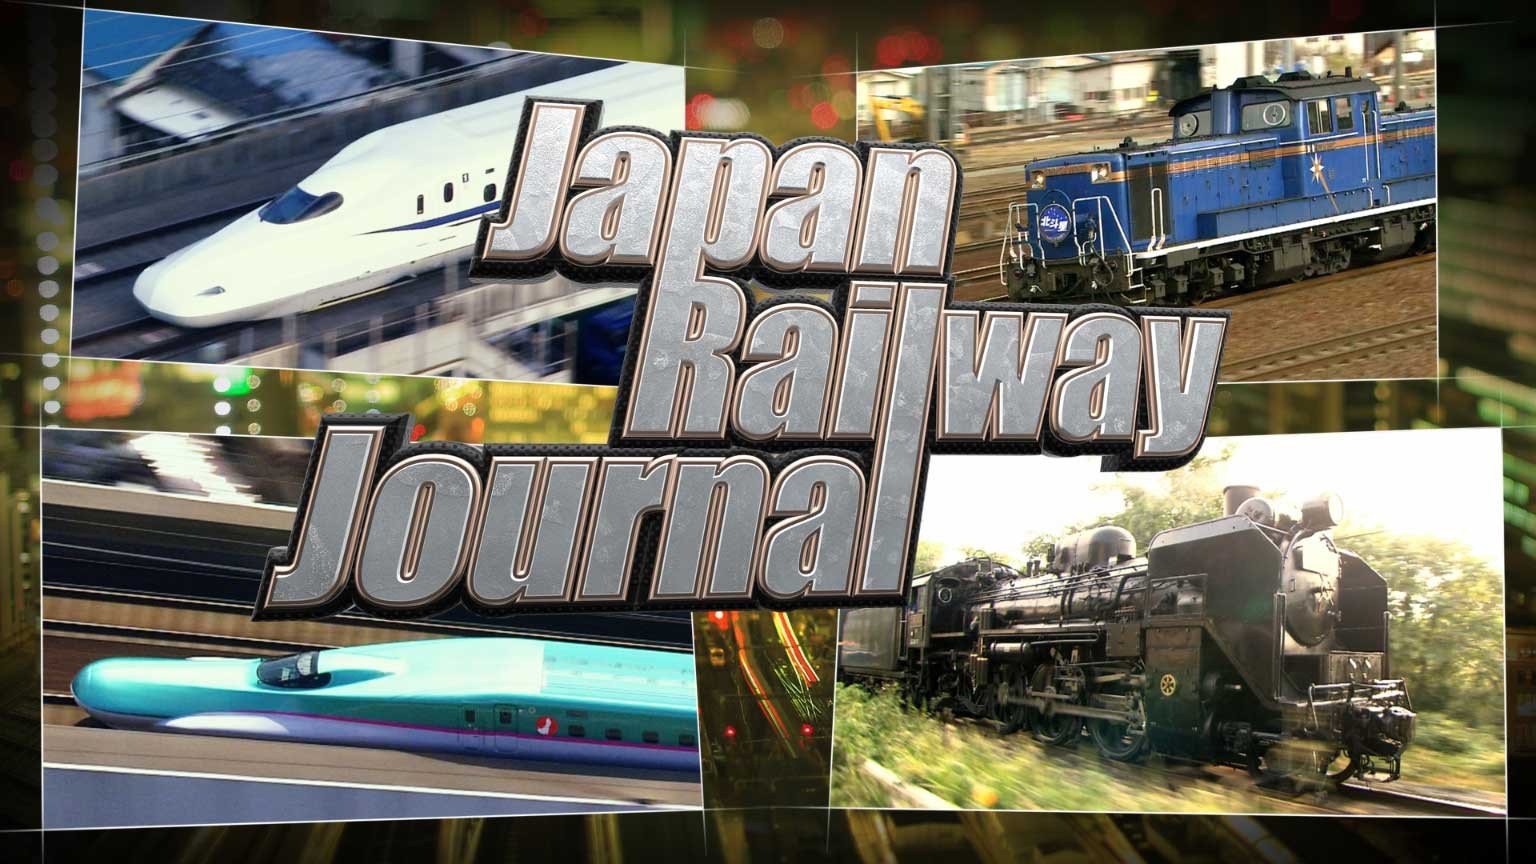 舒適愉快 日本鐵路之旅
Japan Railway Journal